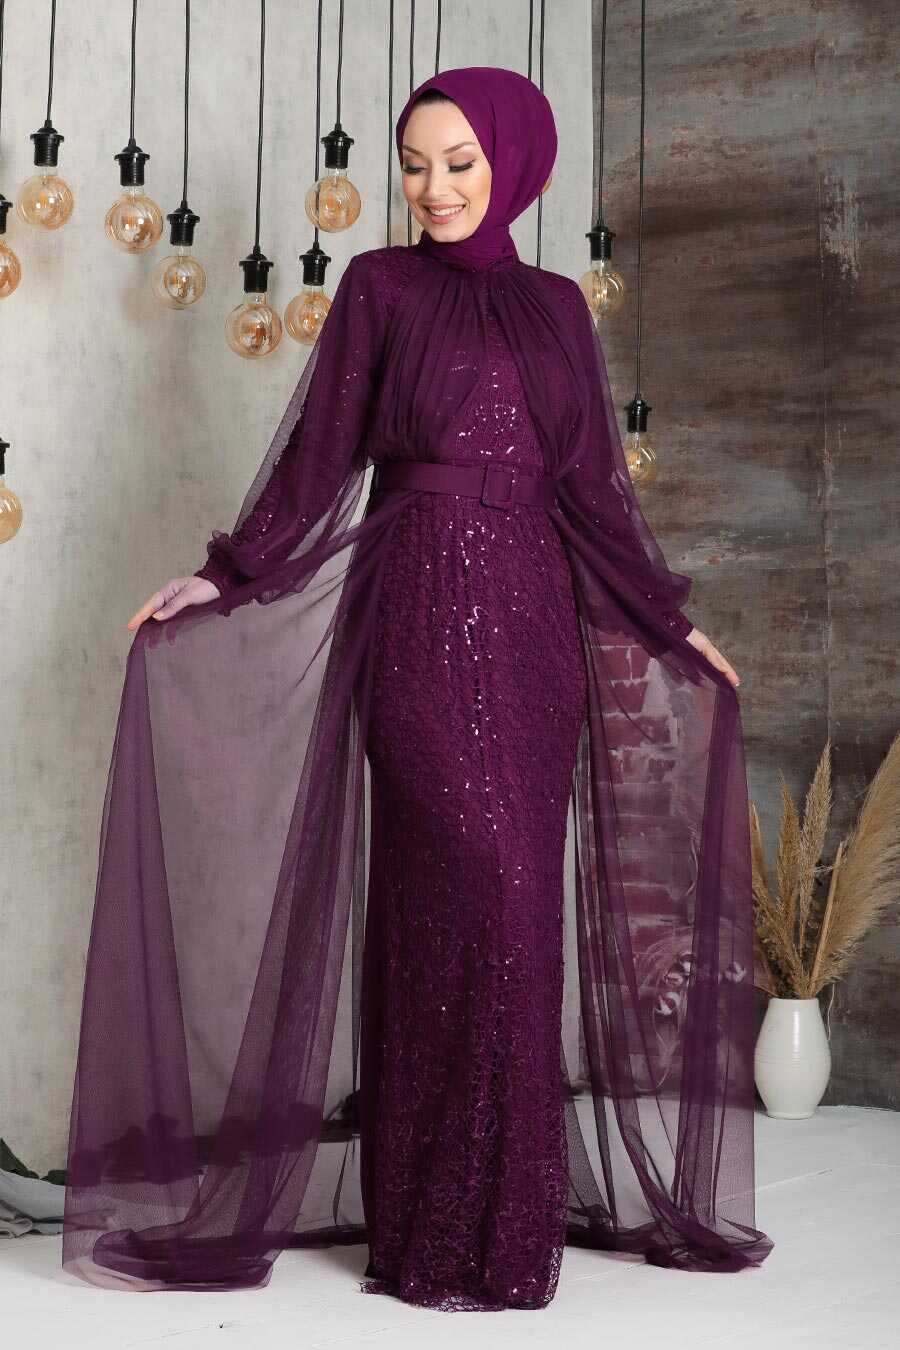 plum color dress